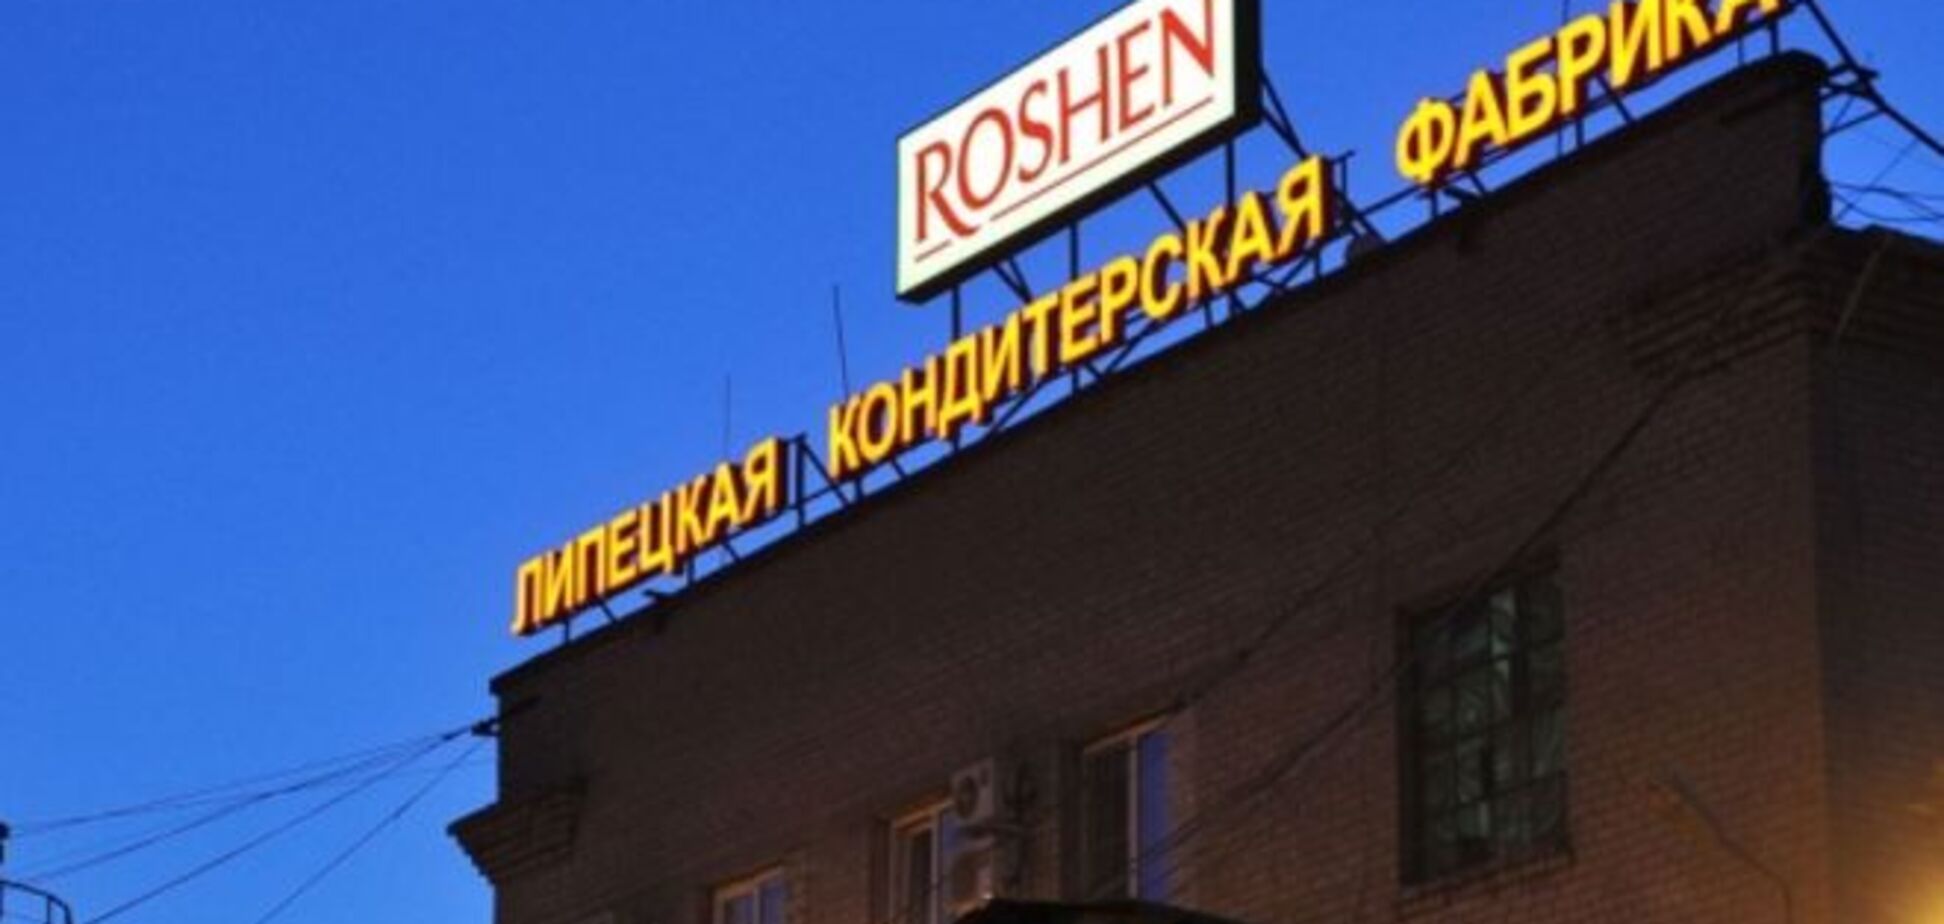 Московский суд признал законным арест имущества Roshen